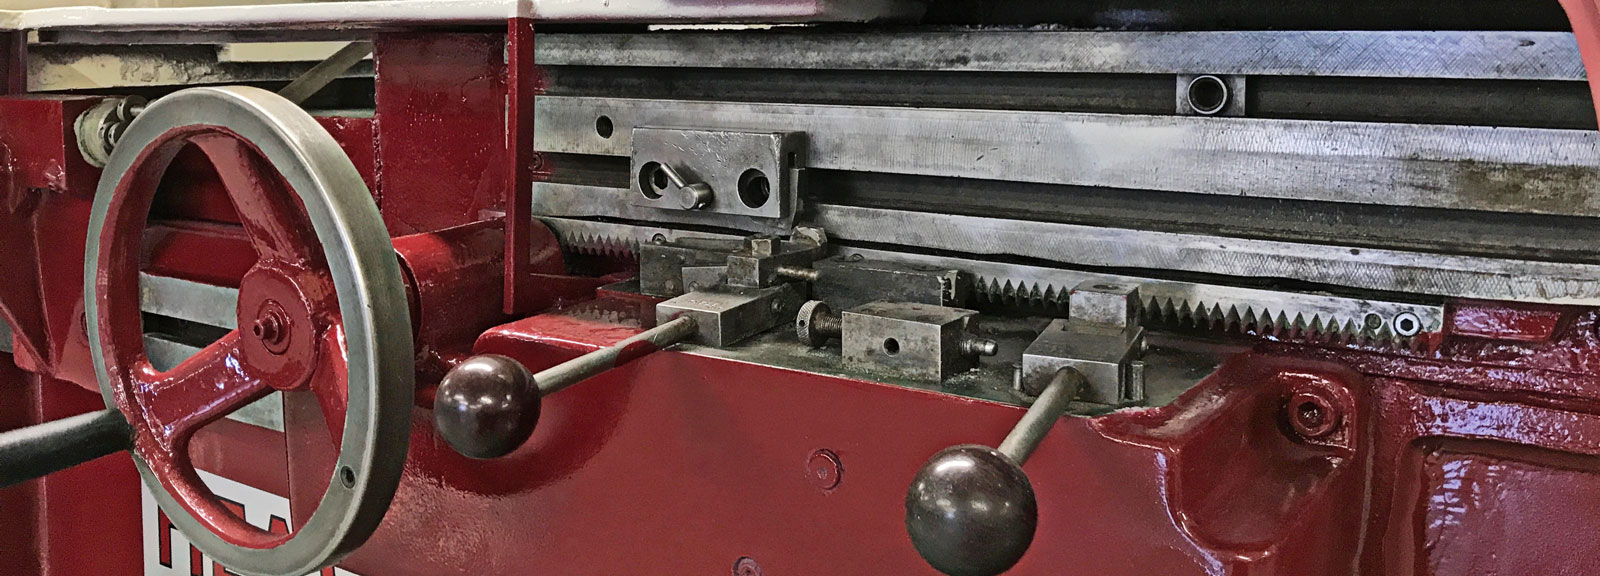 expert machine repair and sales restored machine